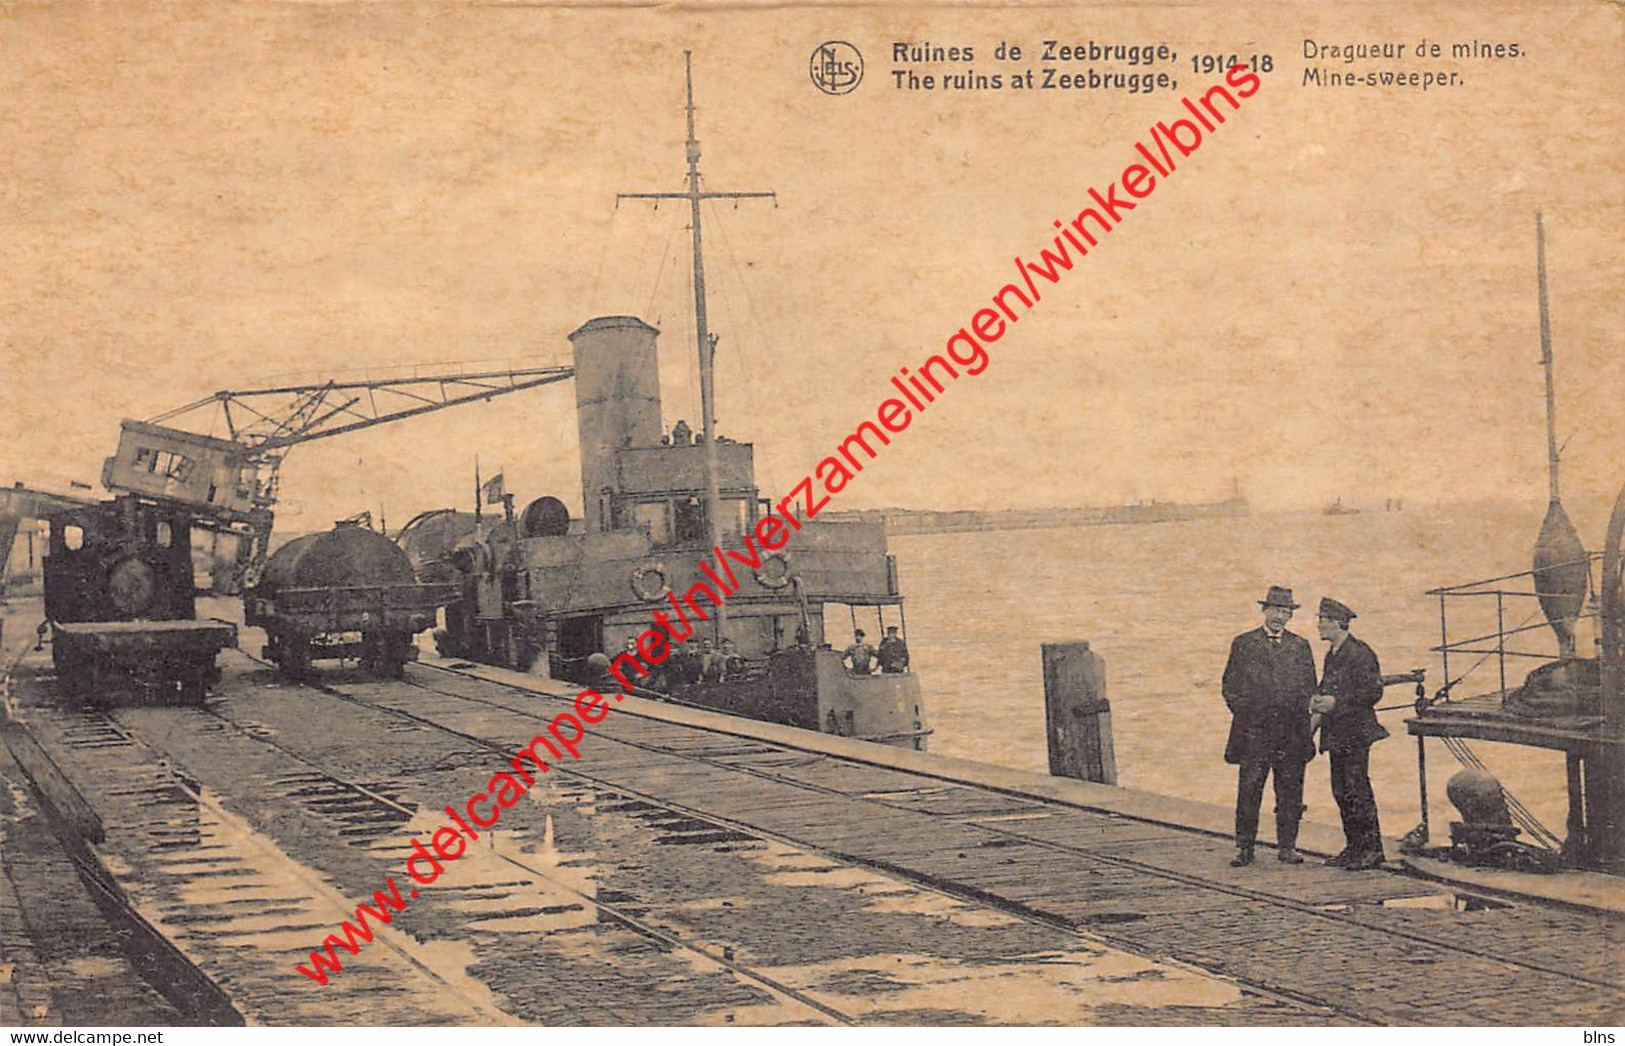 Mine-sweeper - Dragueur De Mines - 1914-1918 - Zeebrugge - Zeebrugge